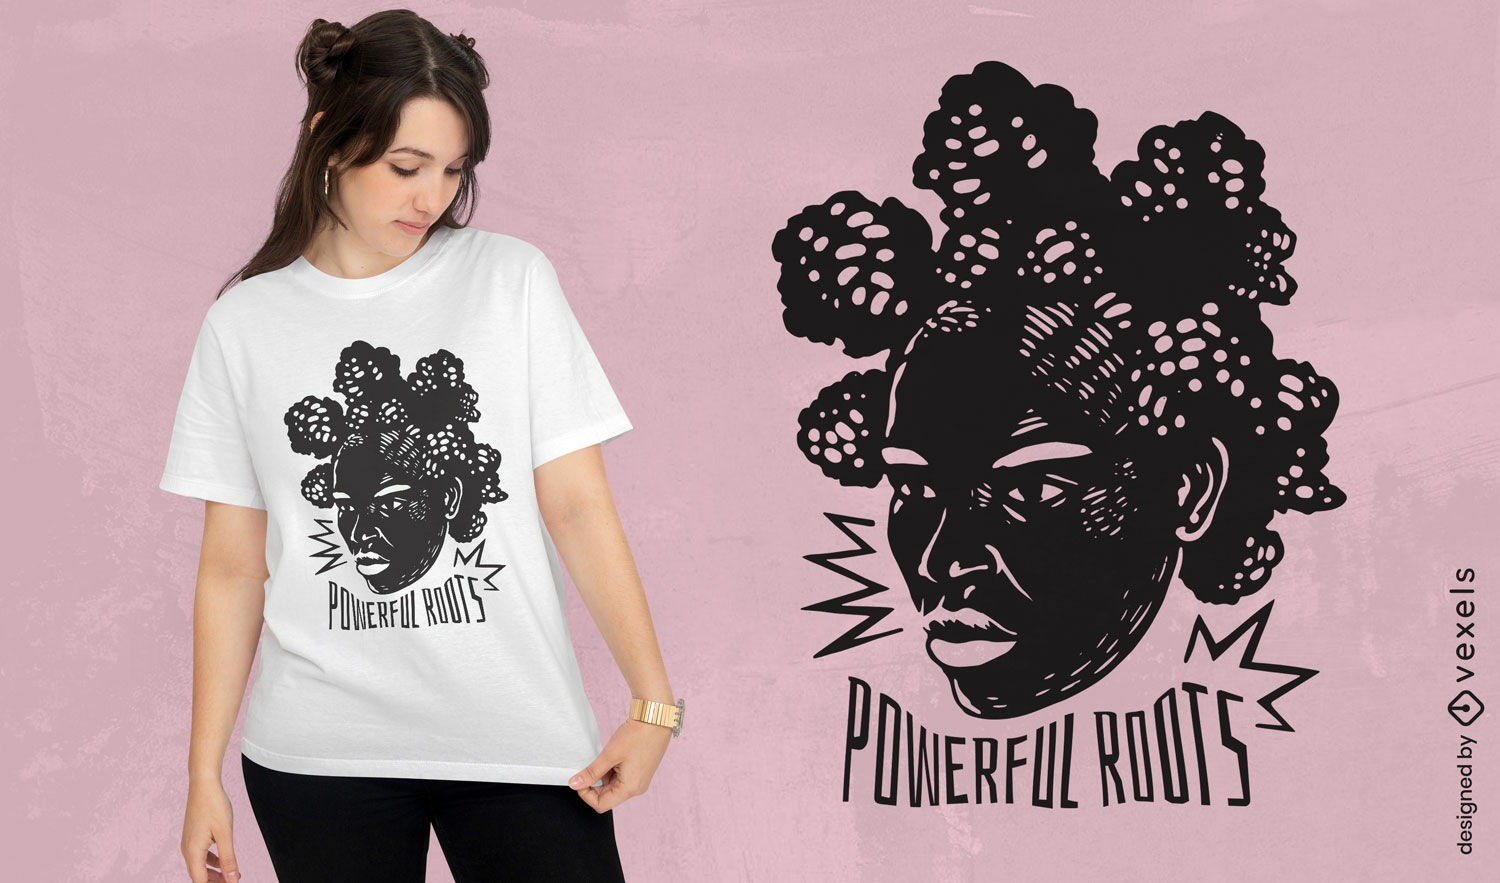 T-Shirt-Design f?r schwarze Frauen mit starken Wurzeln